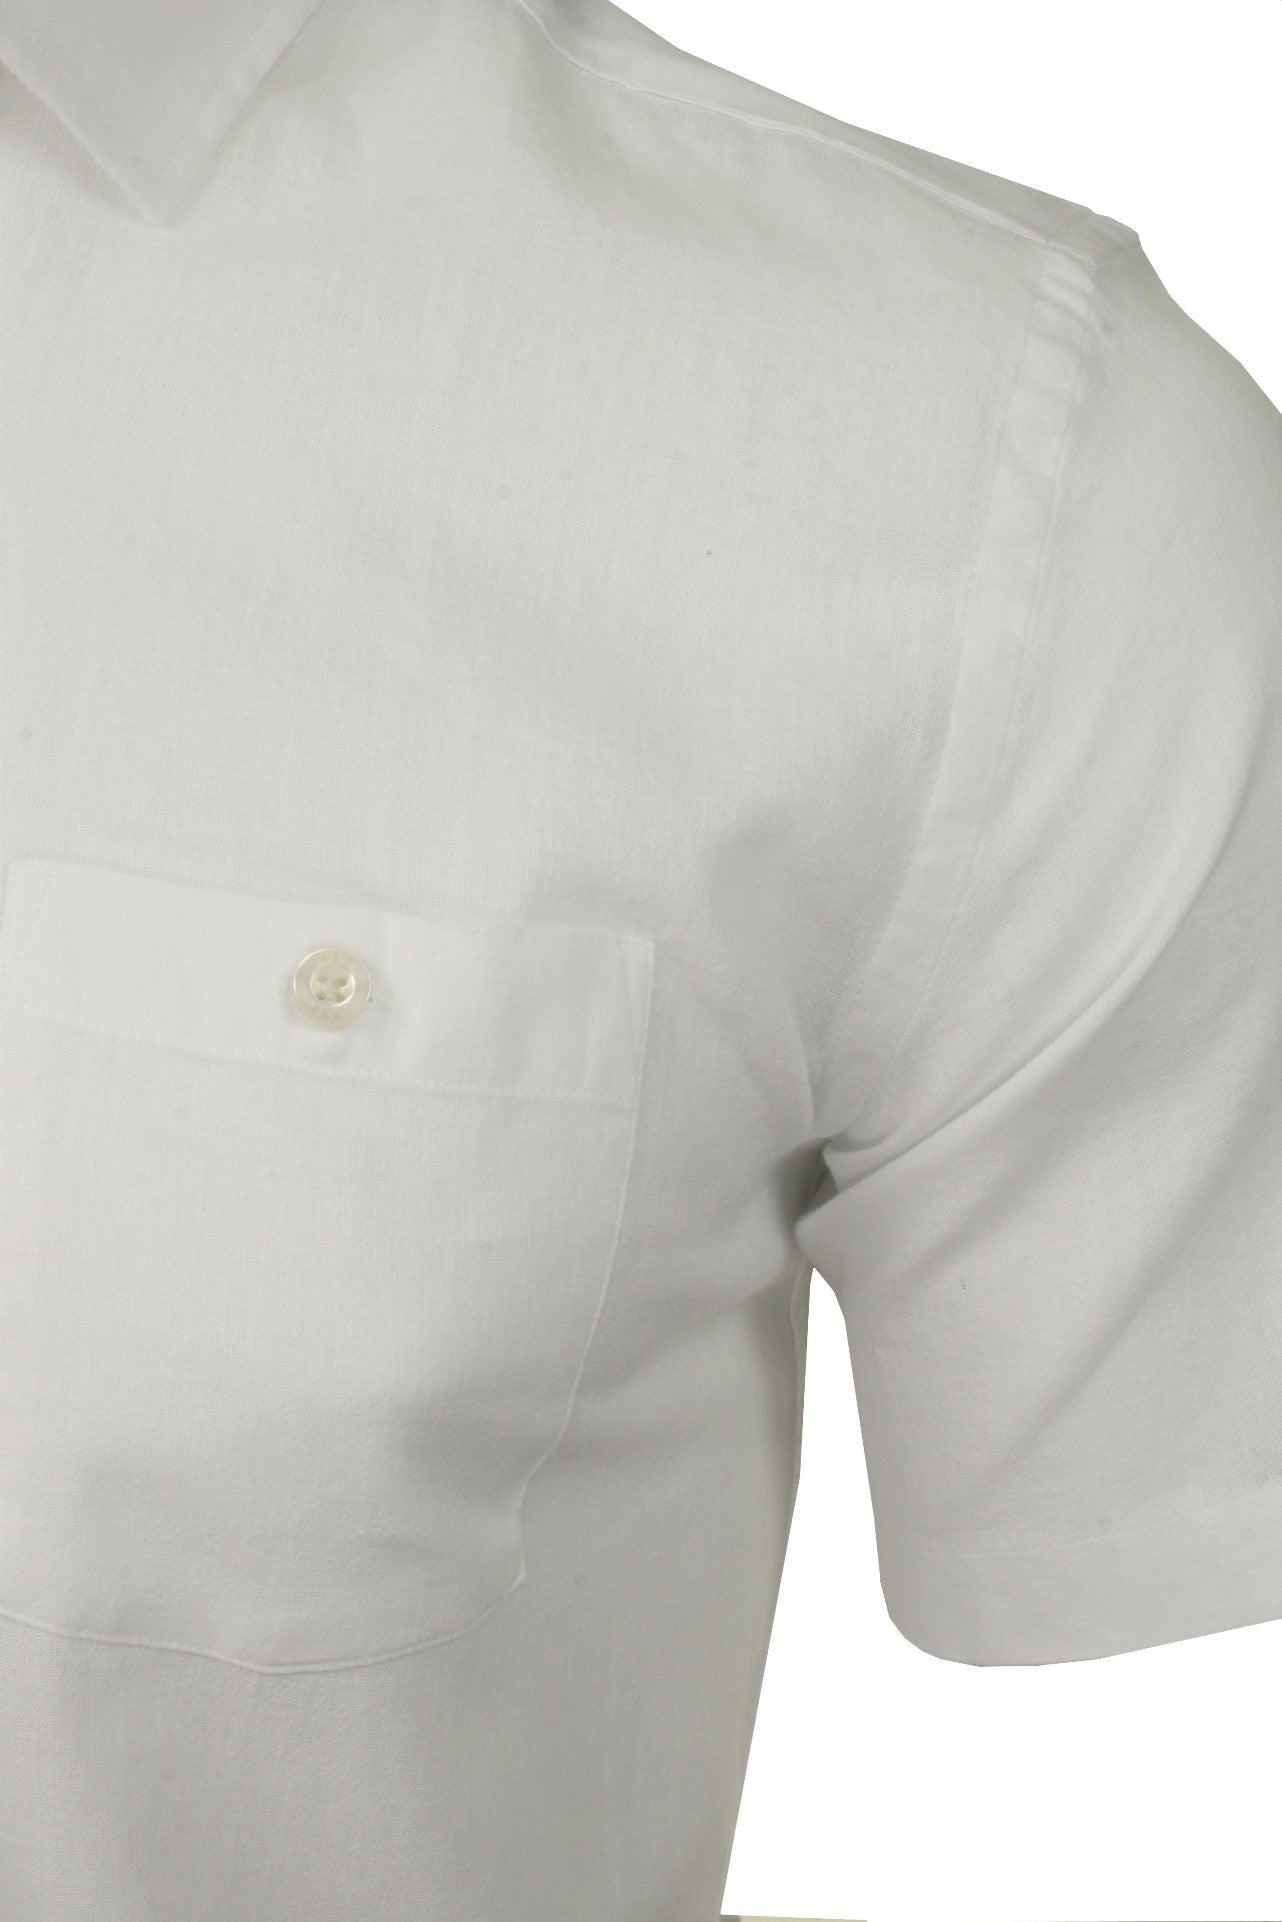 Xact Mens Linen Shirt - Short Sleeved-2